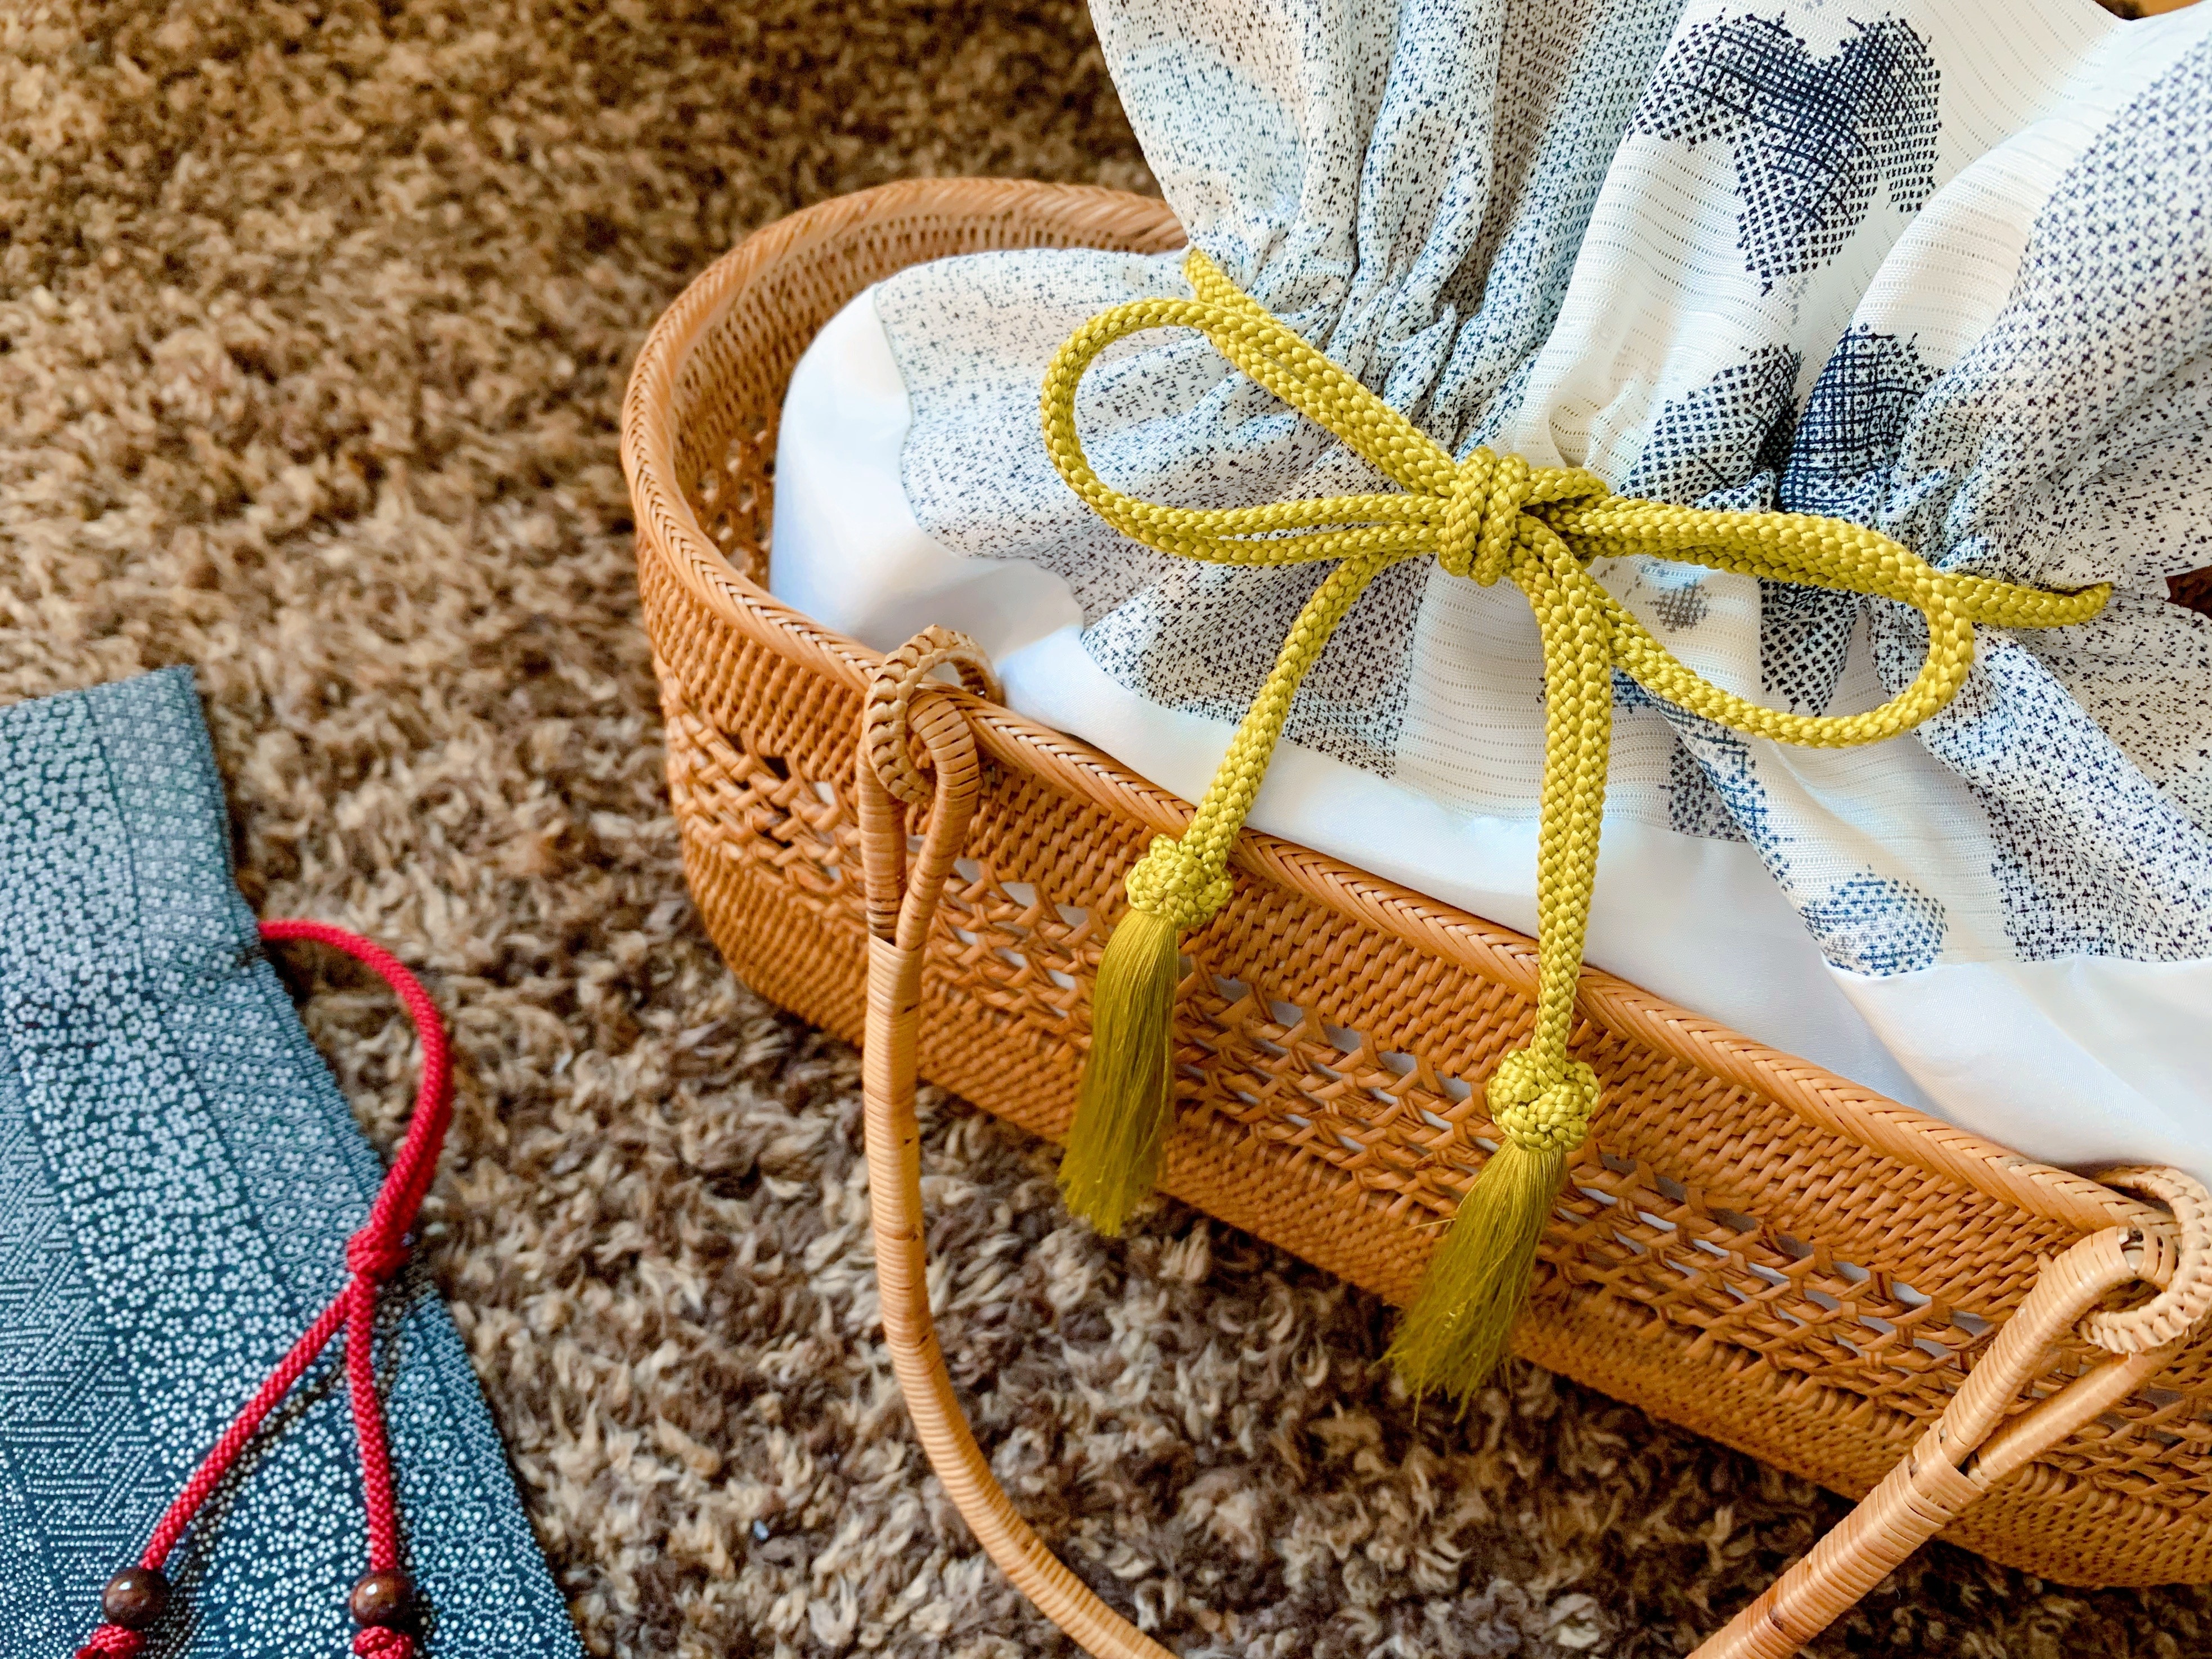 インナーバッグ巾着型の作り方ーかごバッグの内袋を作る方法をご紹介します ユウミ キモノブログ